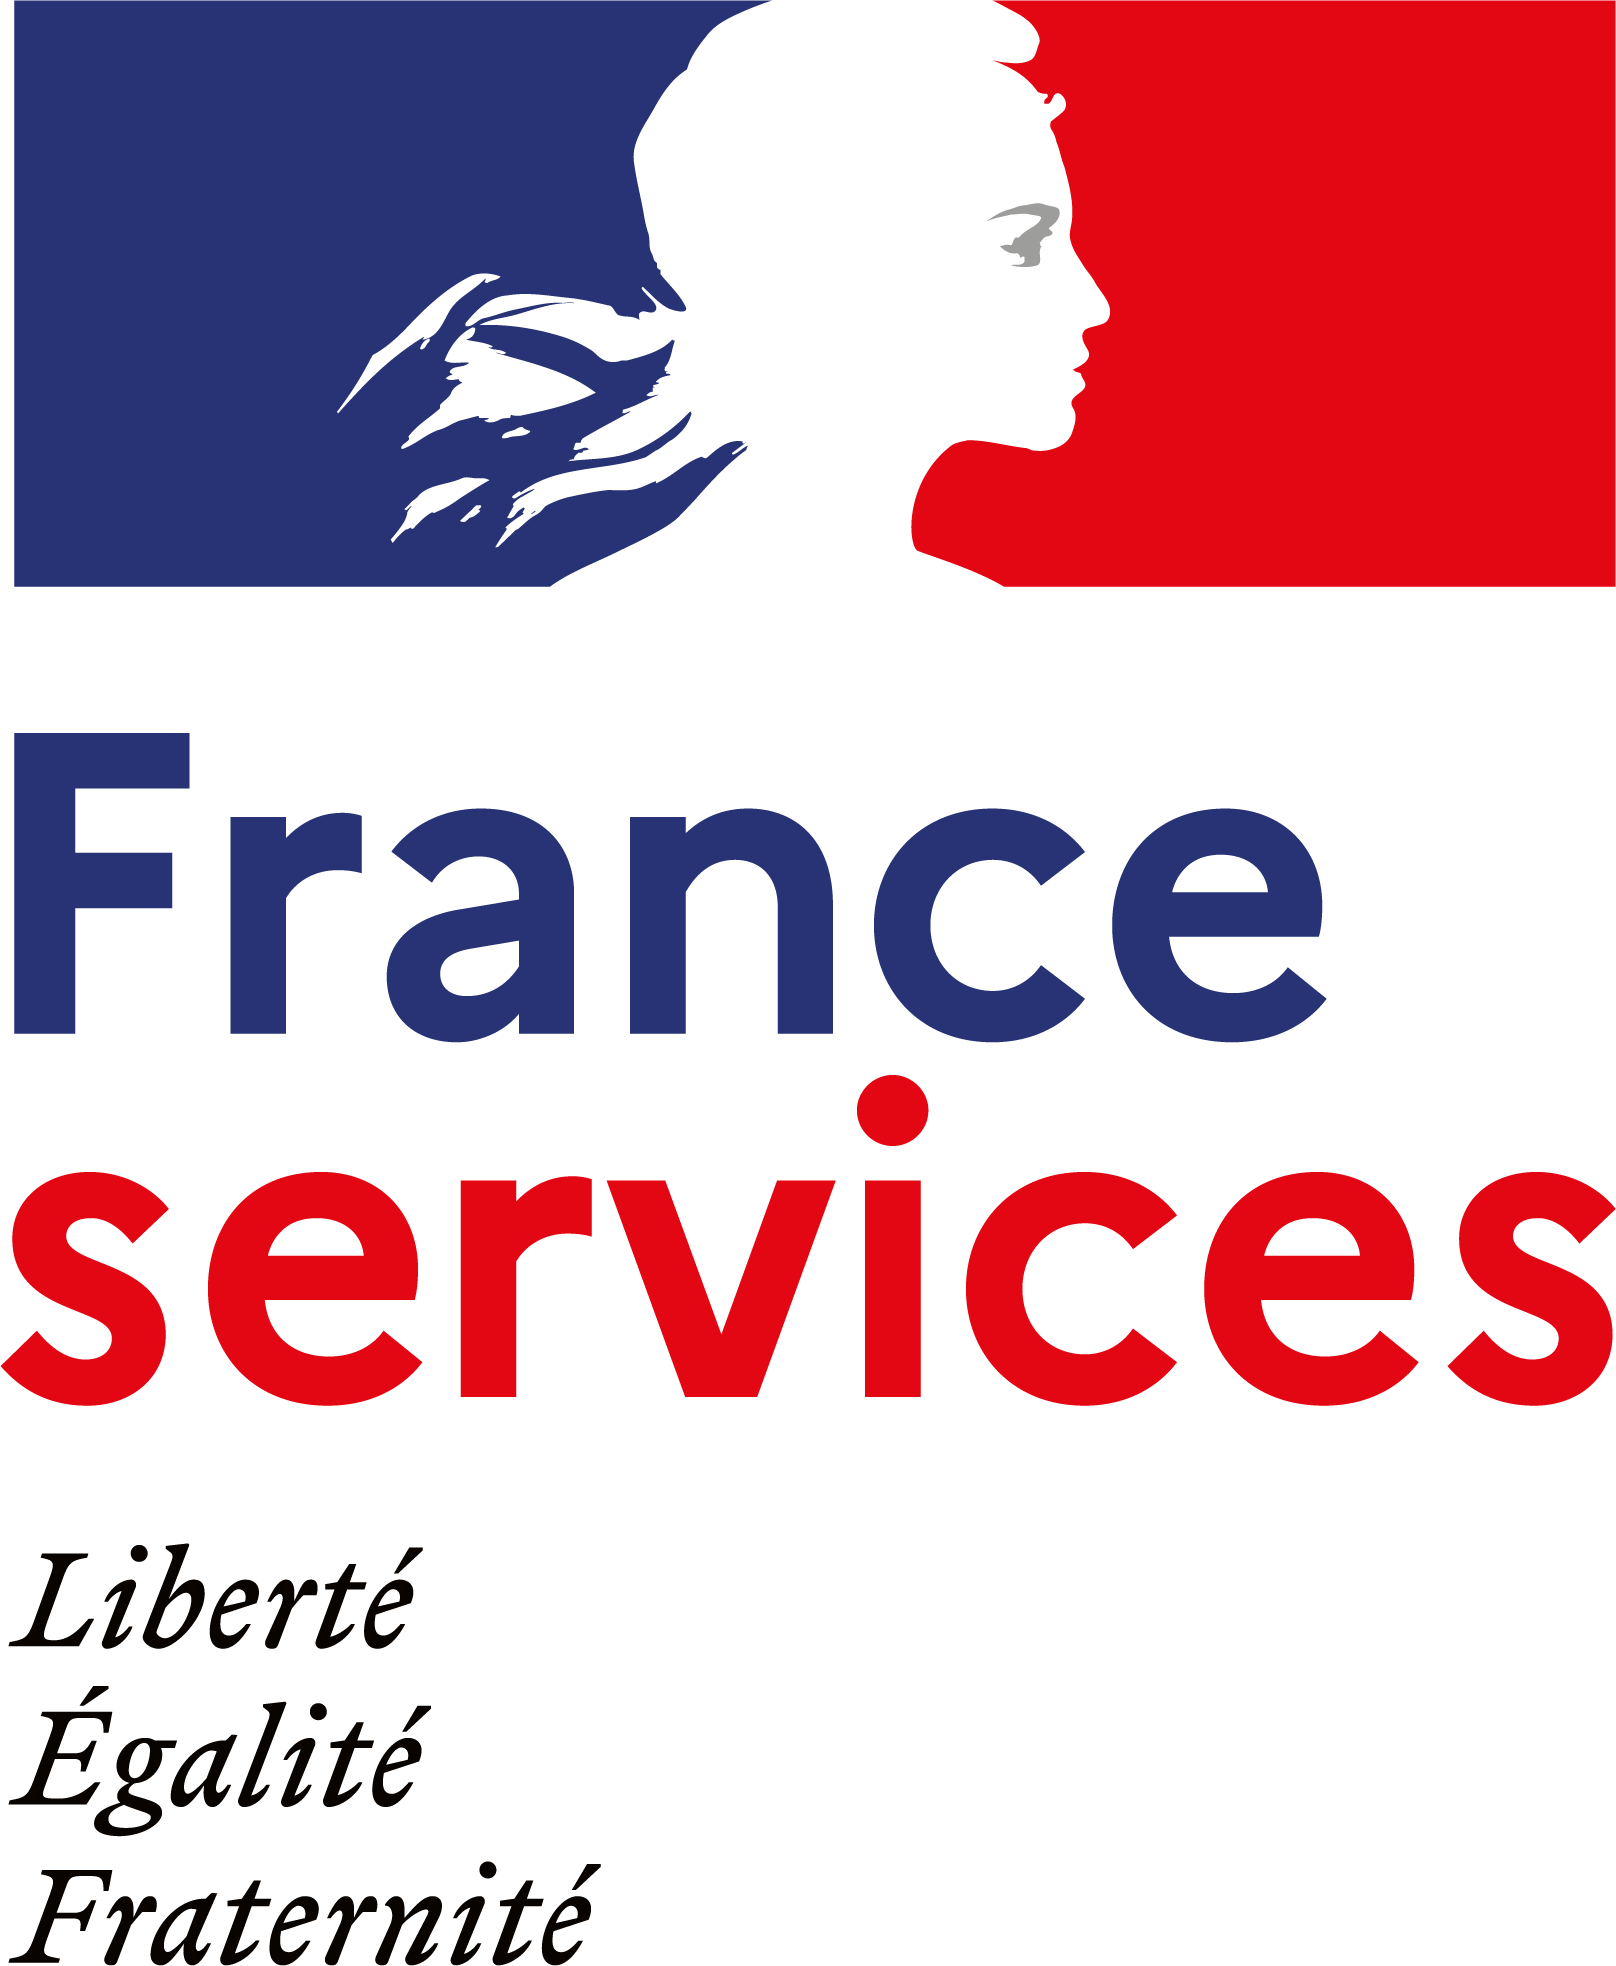 logo FranceServices 01